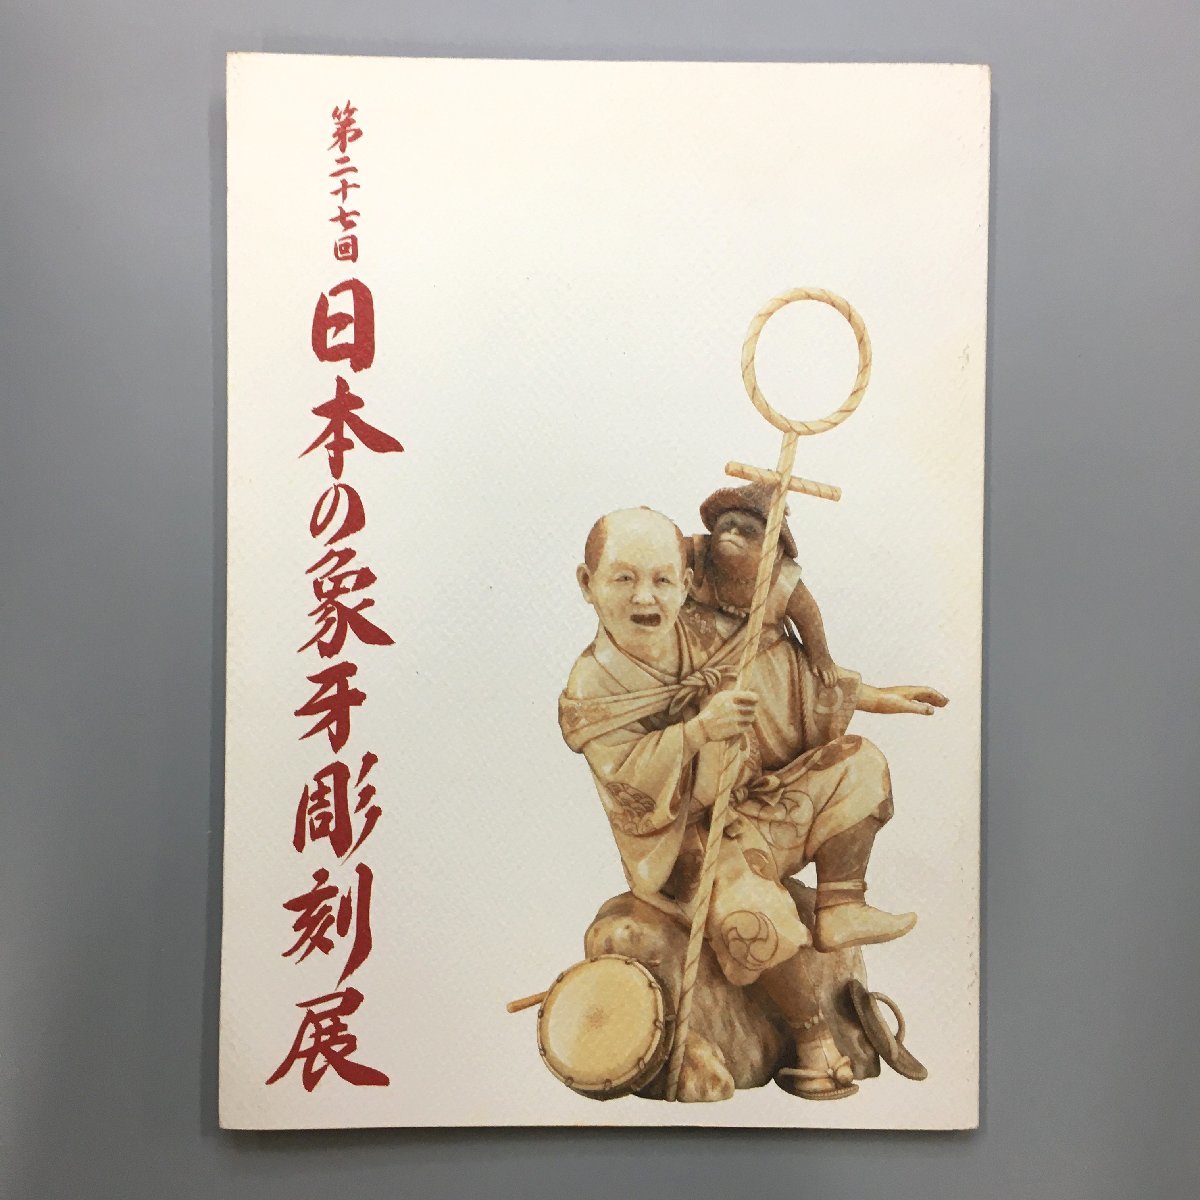 『第27回 日本の象牙彫刻展』図録   作品集 カタログ の画像1